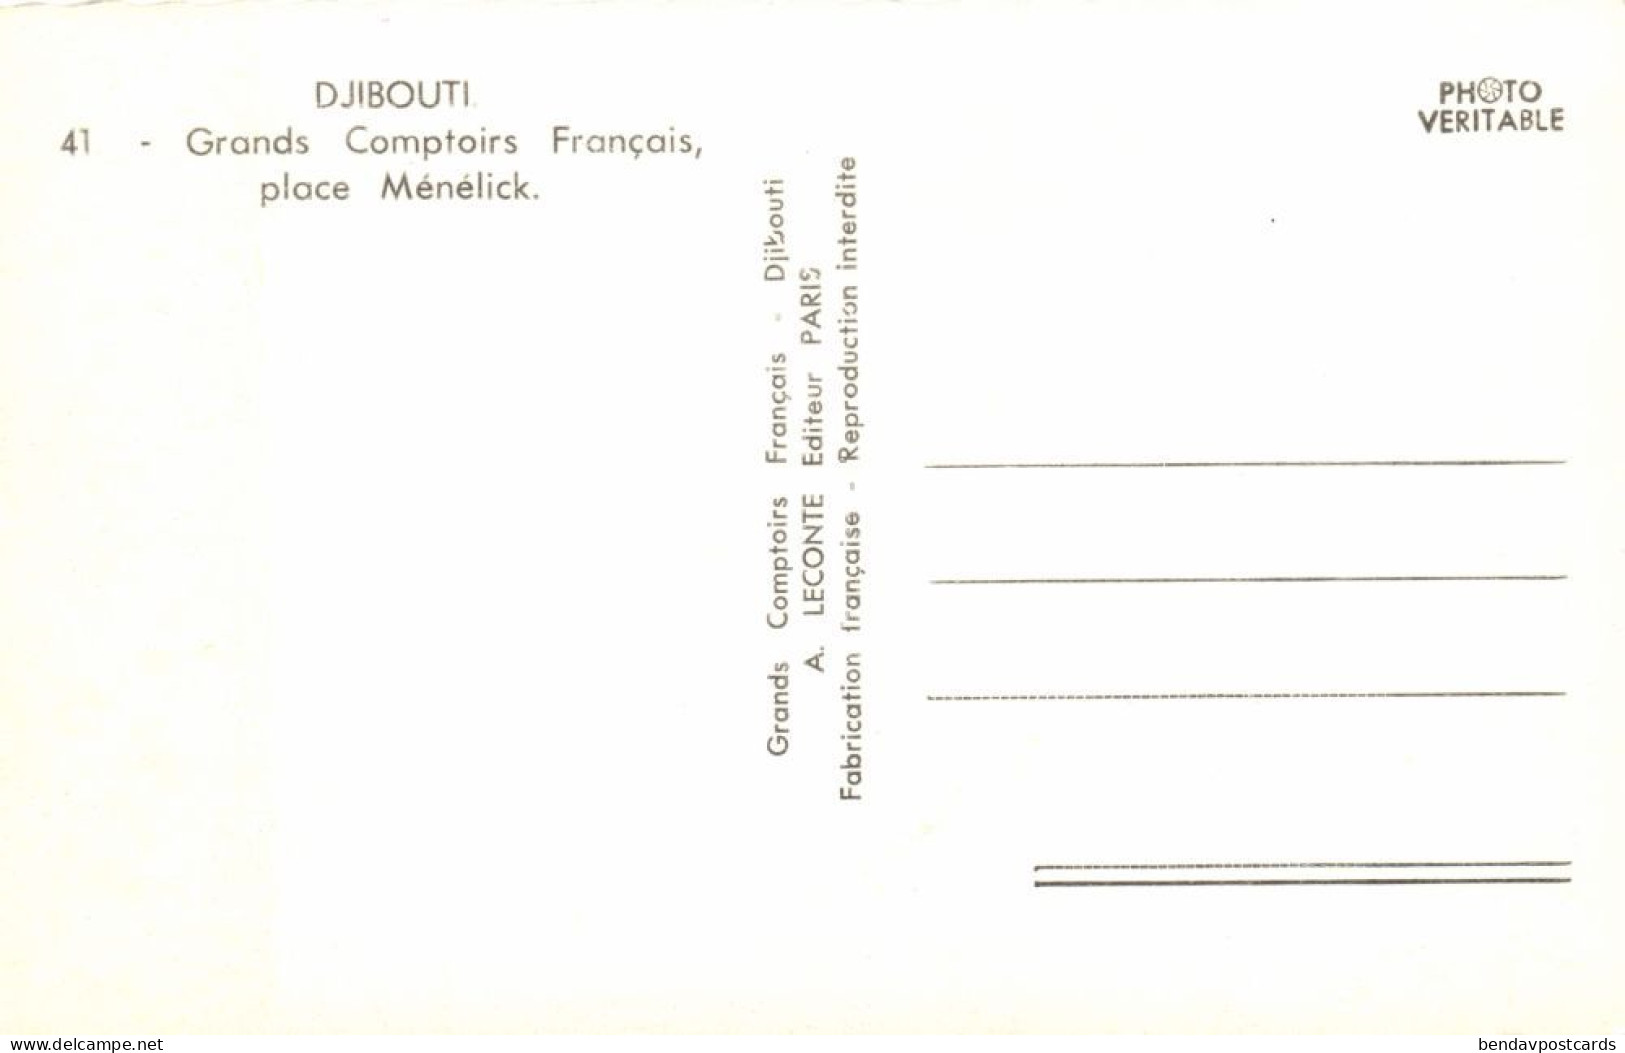 Djibouti, DJIBOUTI, Grands Comptoirs Français (1950s) RPPC Postcard - Djibouti